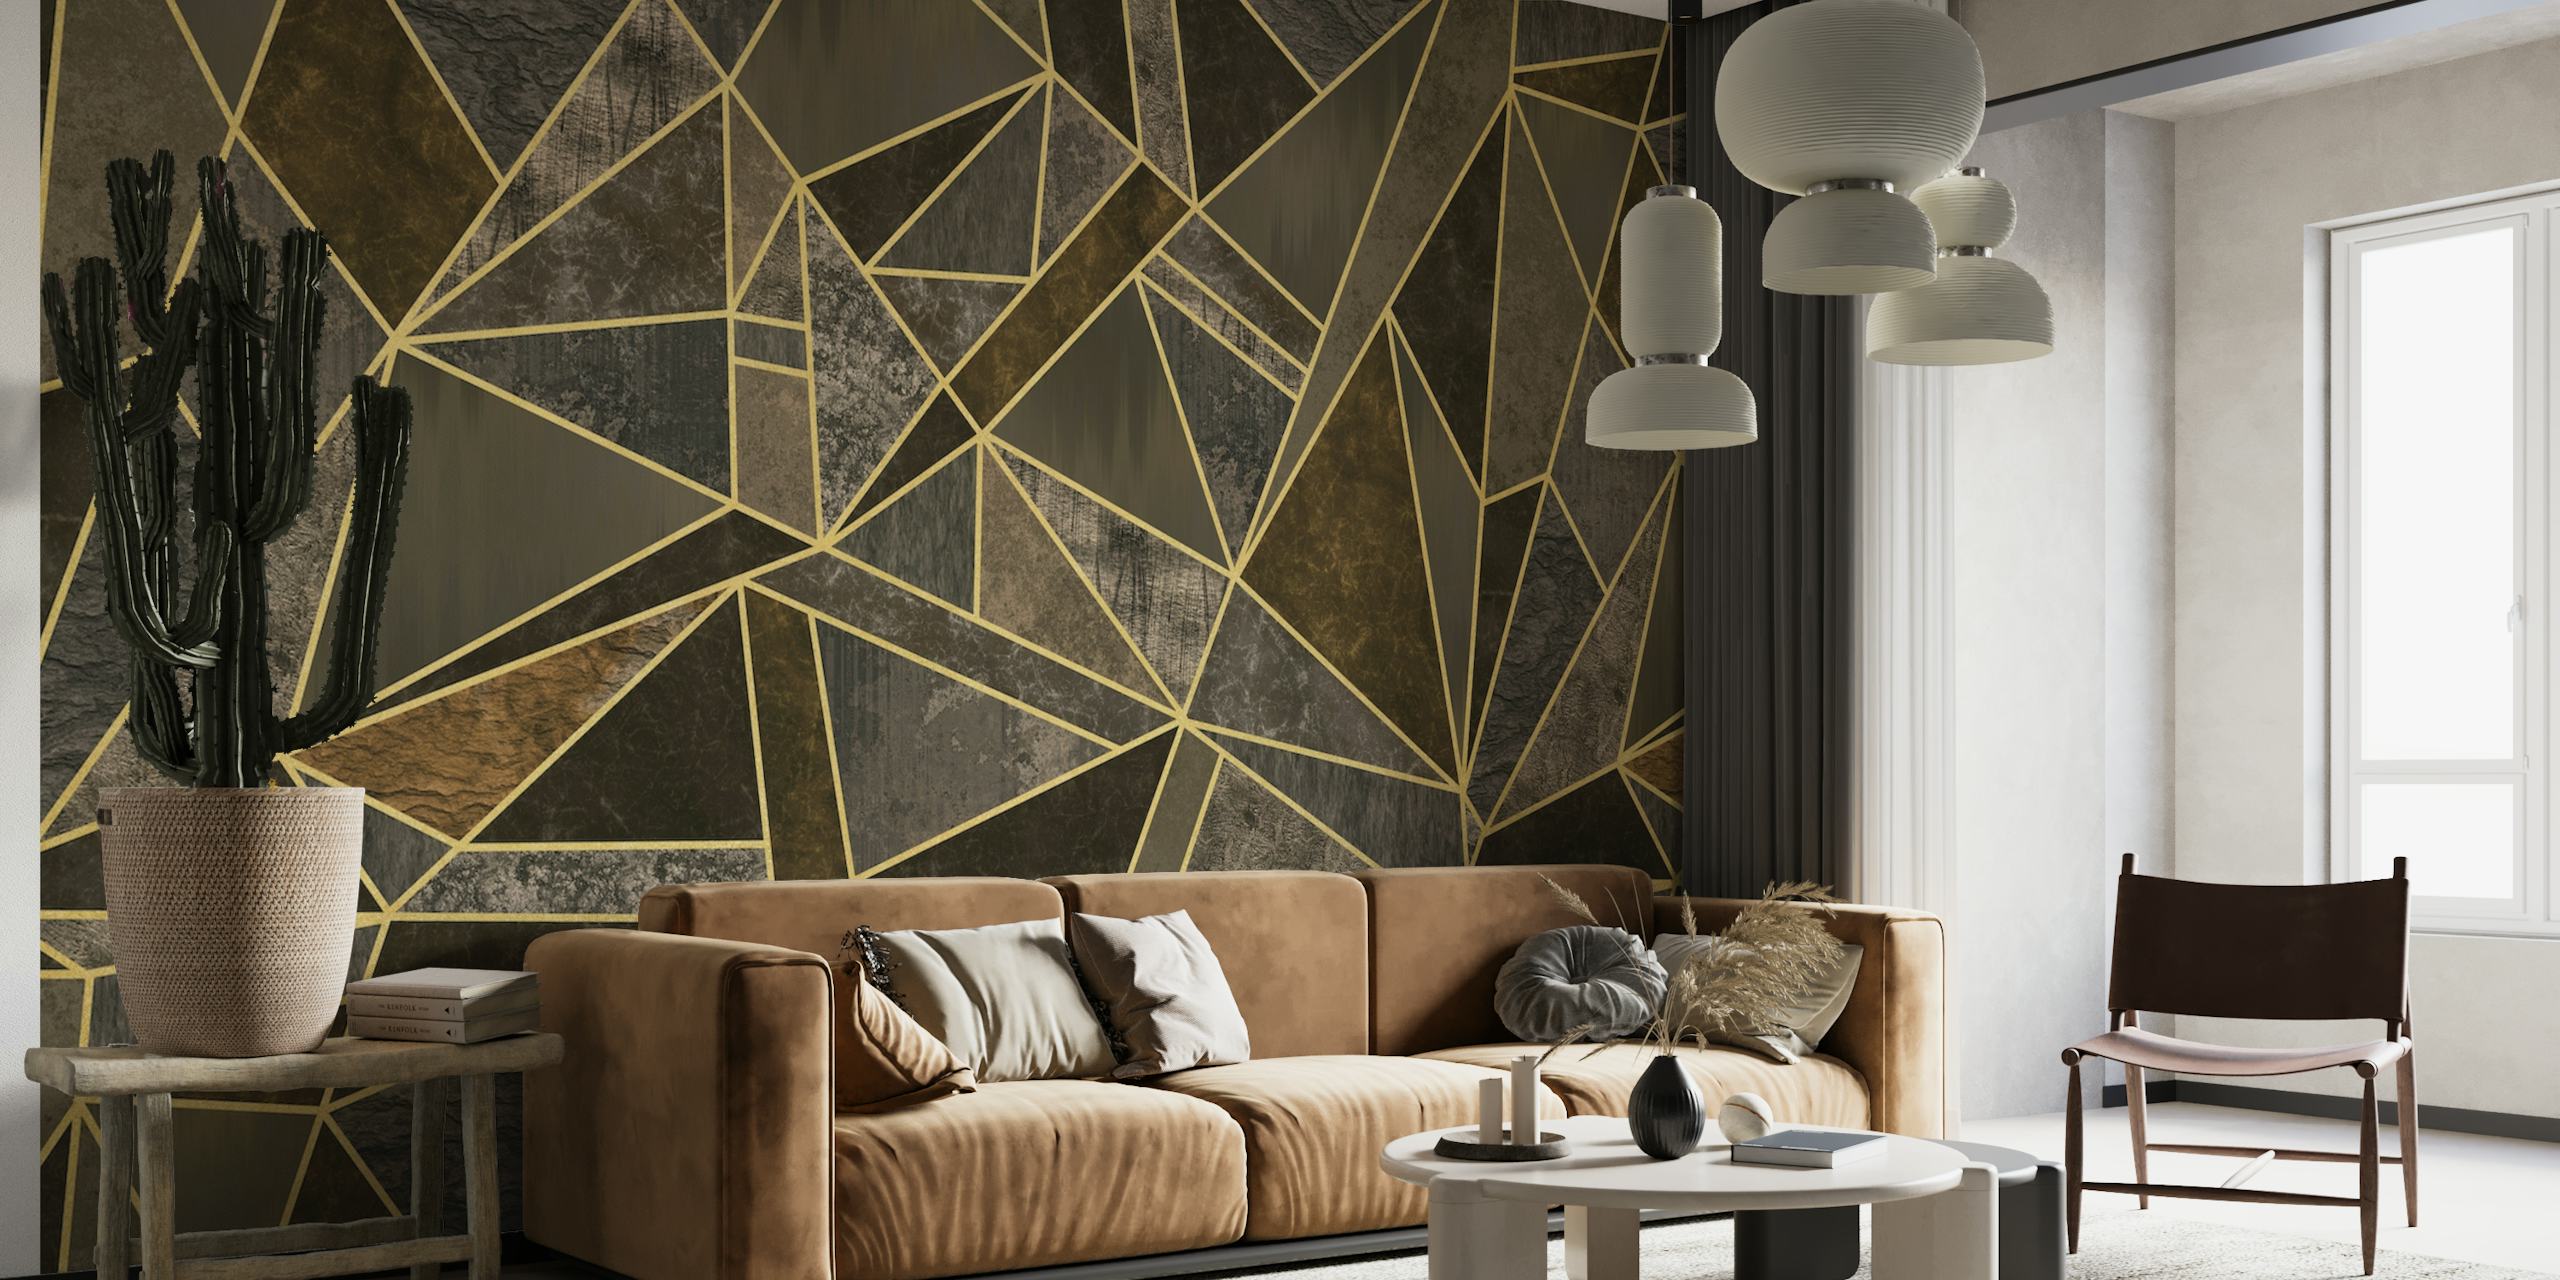 Fotomural vinílico de parede luxuoso com padrão de mosaico geométrico em marrom e dourado